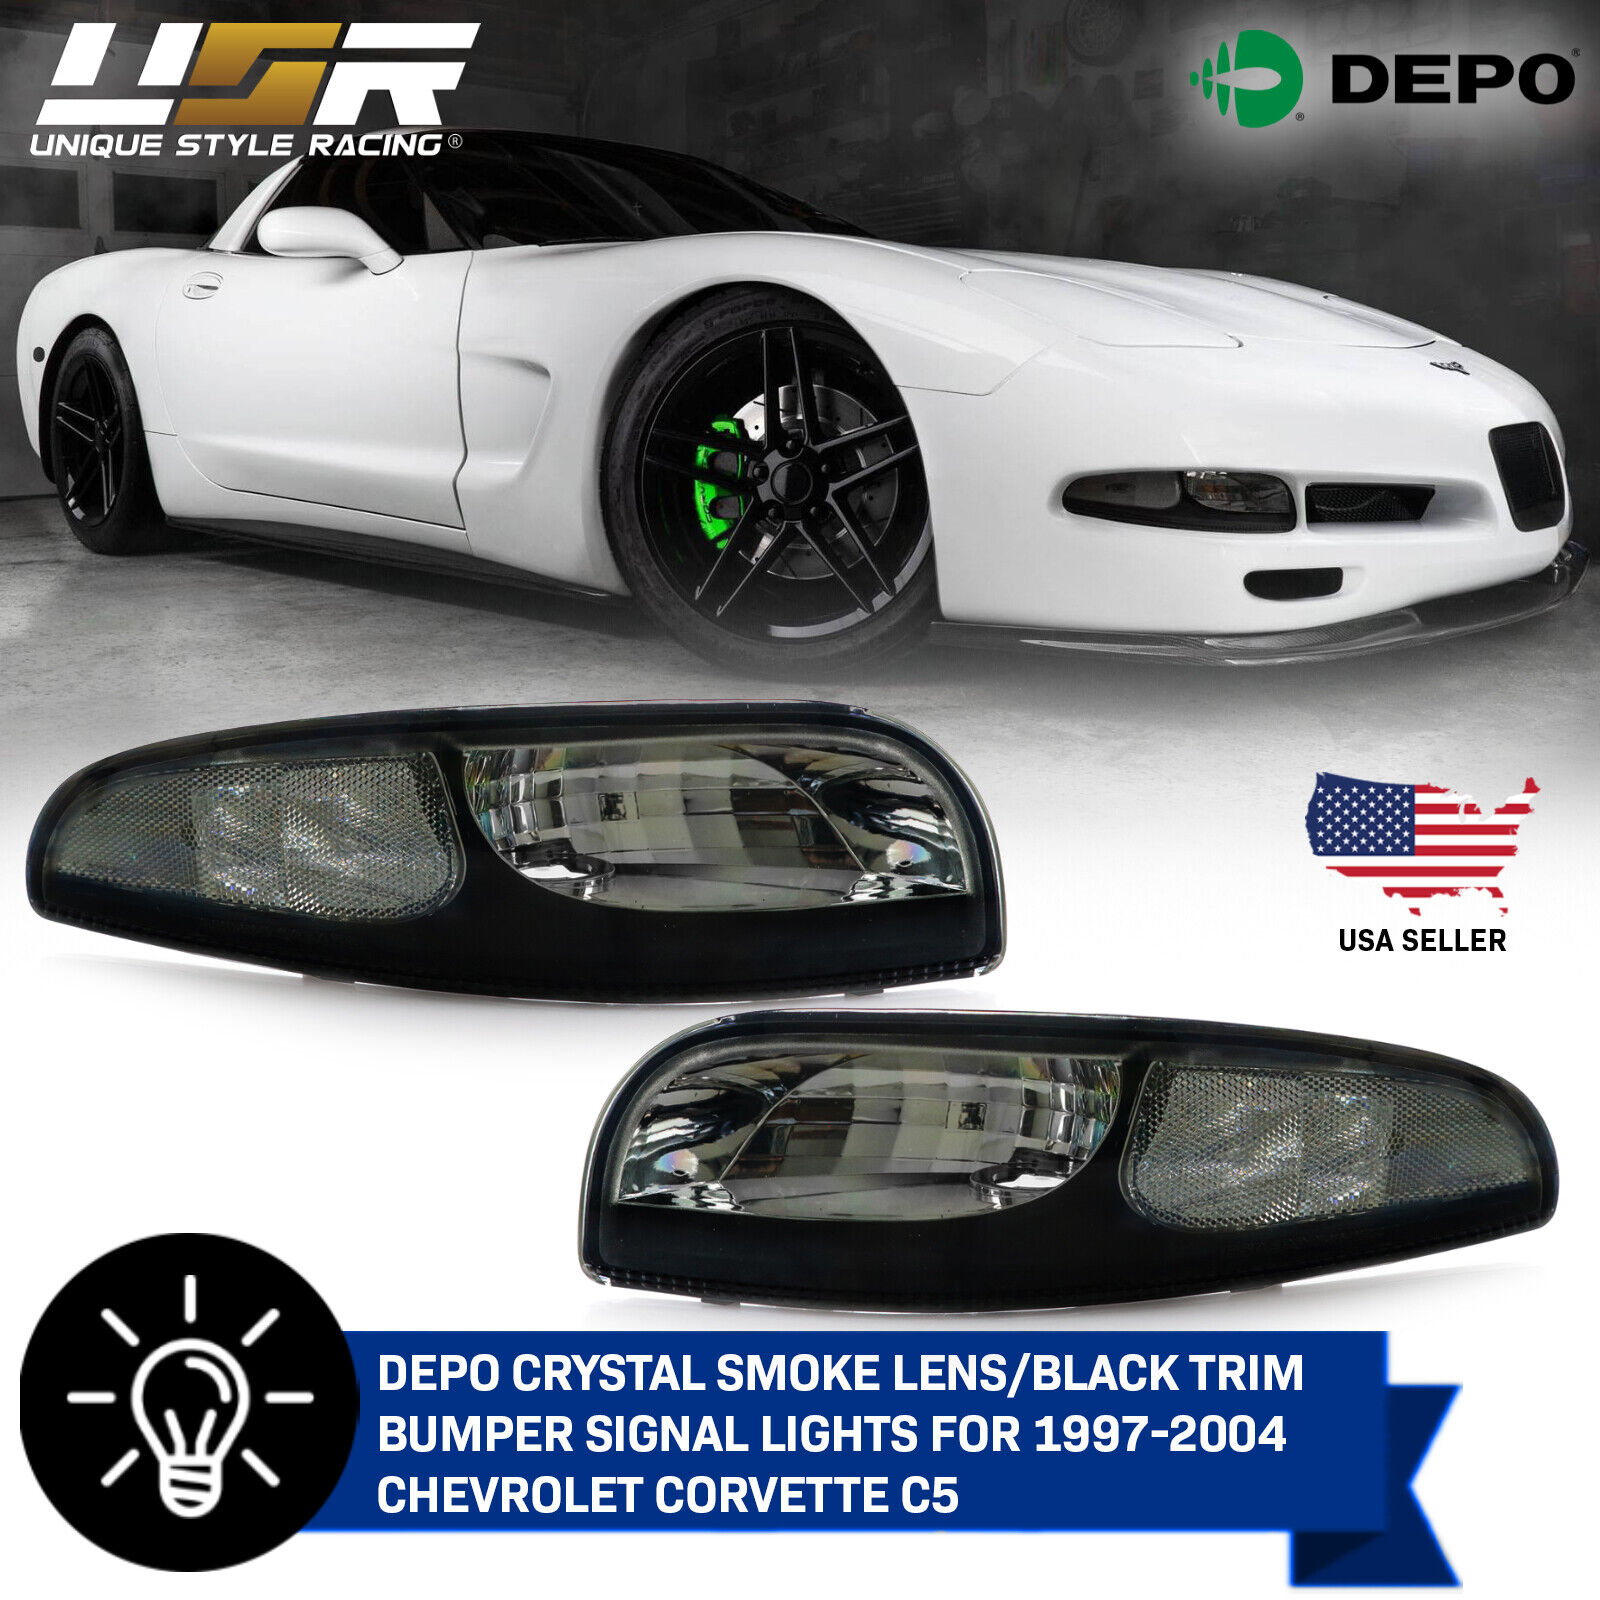 DEPO Pair of Light Smoke Bumper Lights For 1997-2004 Chevy Chevrolet Corvette C5